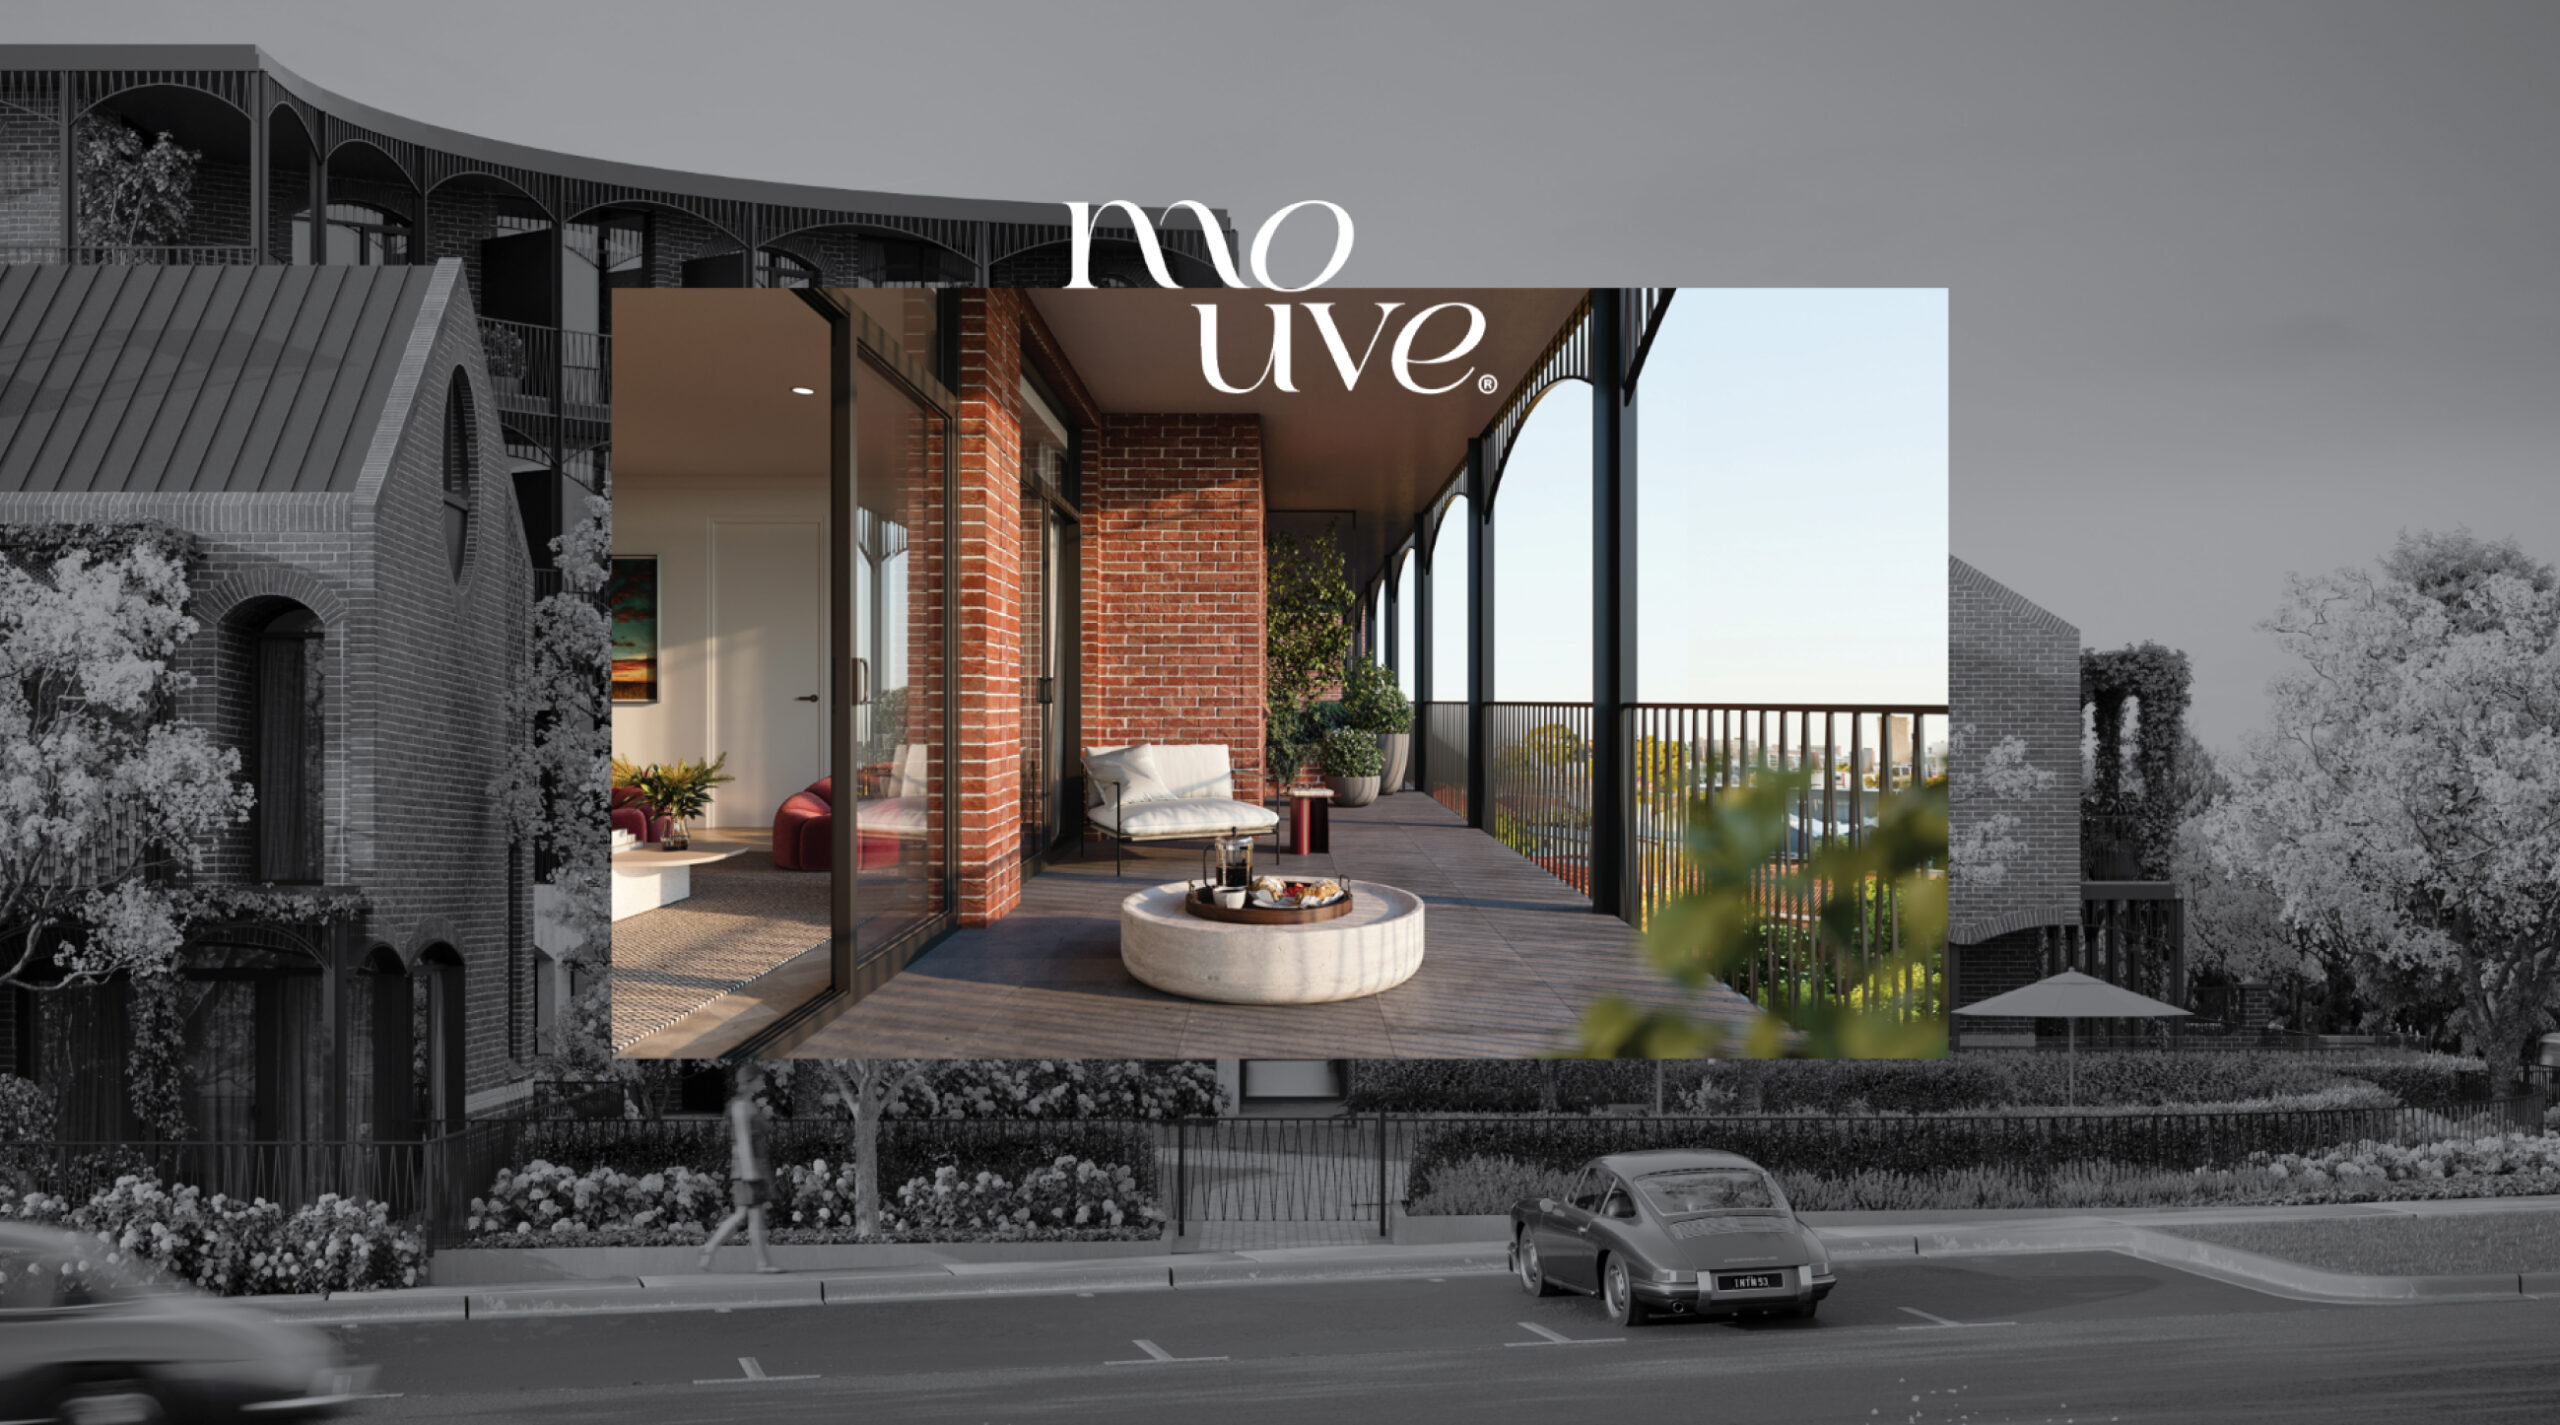 Mouve Real Estate Brand Development Design by TL Design Co.